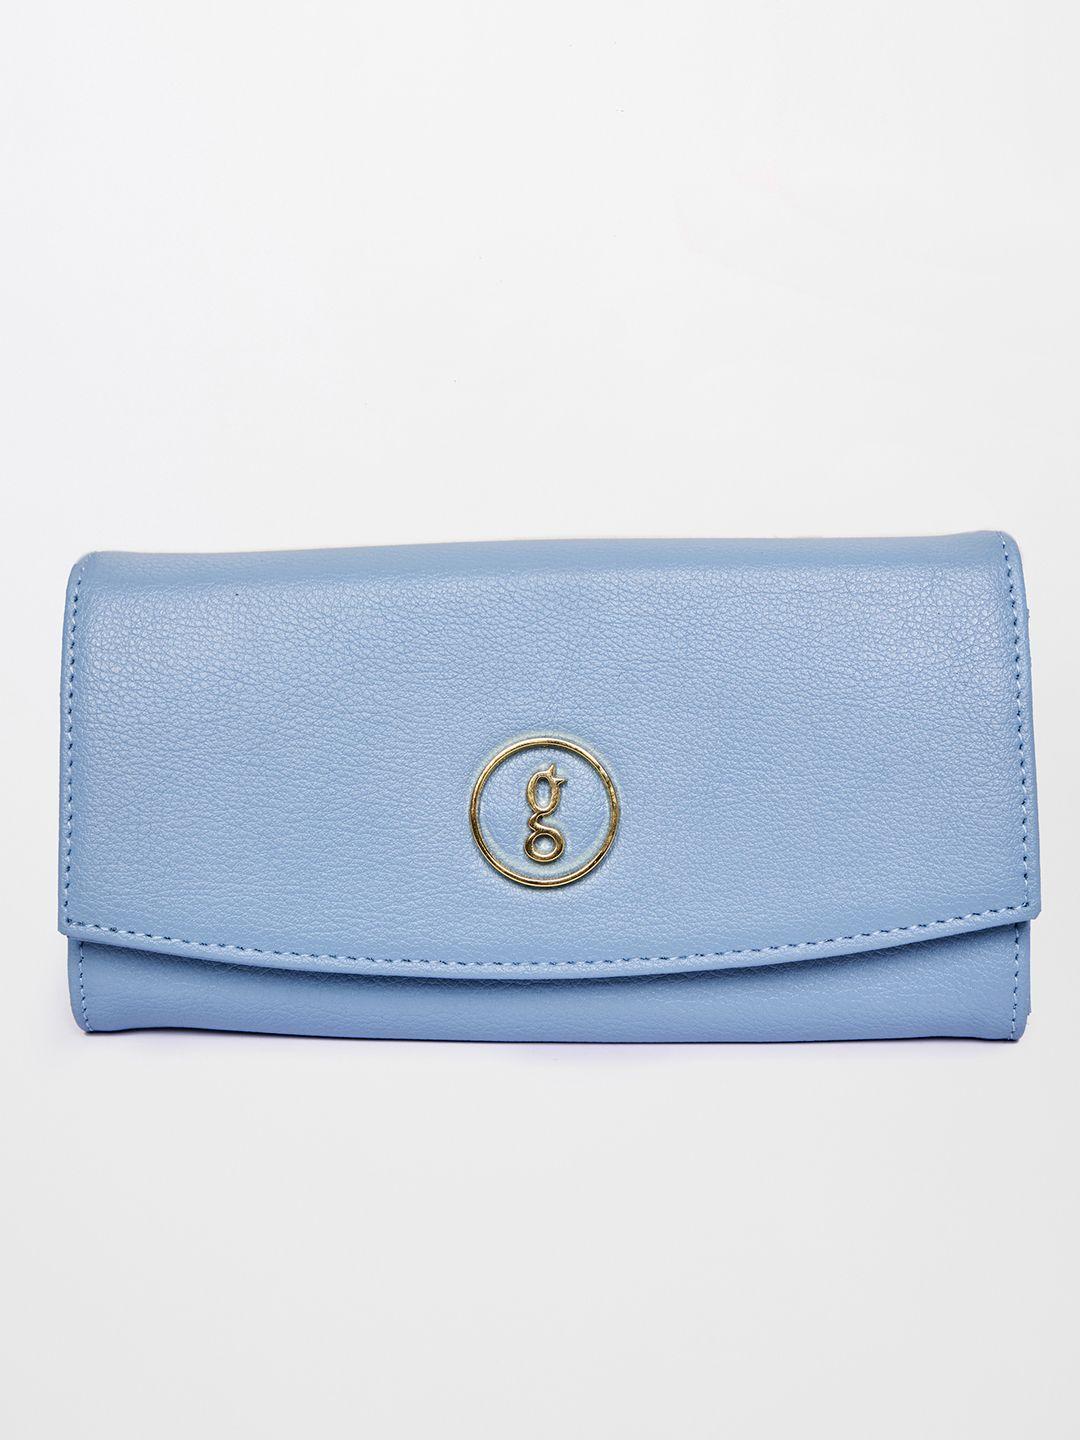 global desi blue purse clutch